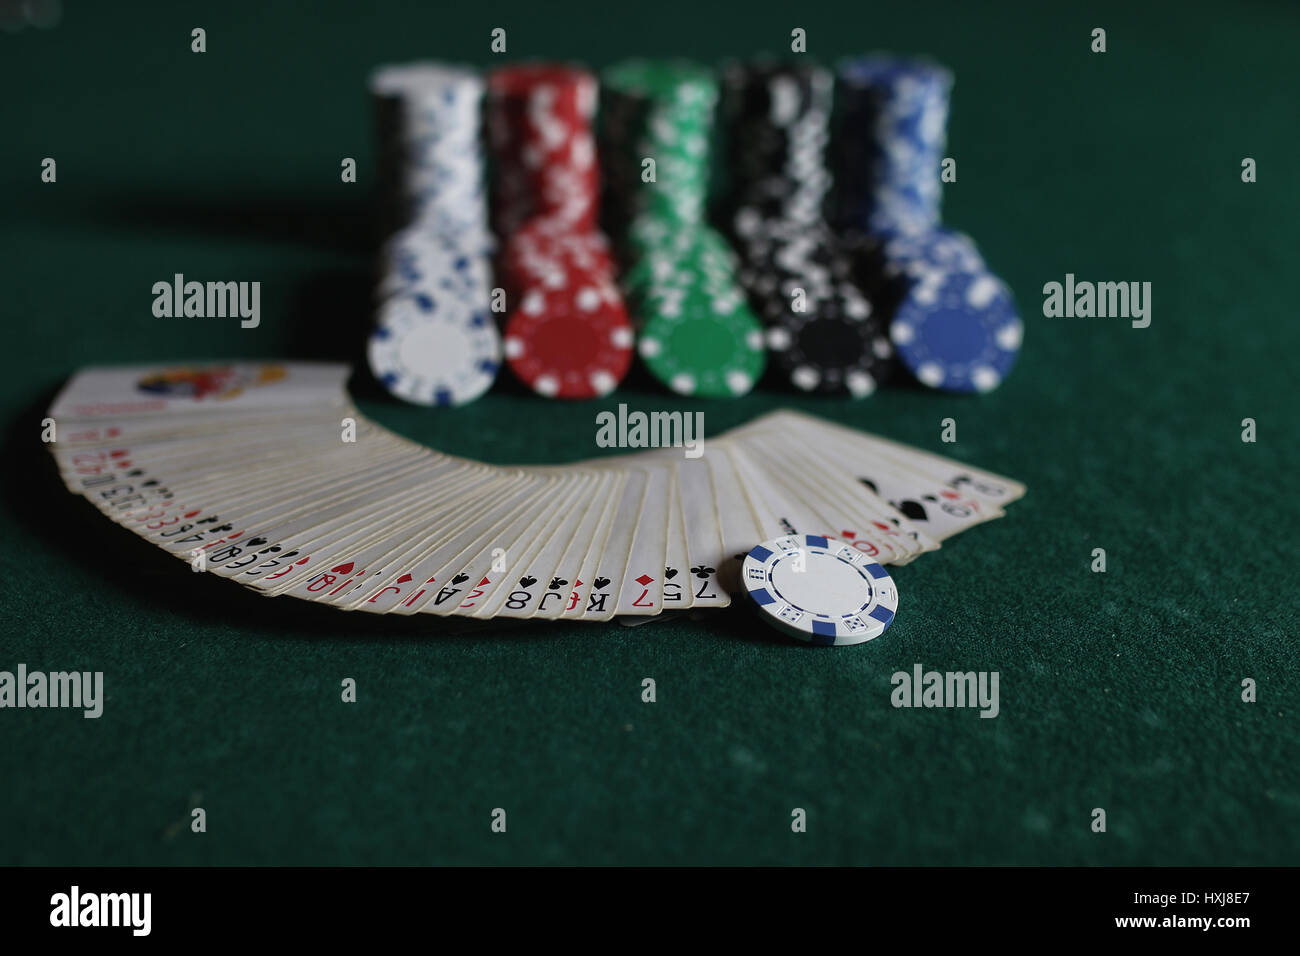 Des jetons de poker et de cartes sur la toile Banque D'Images